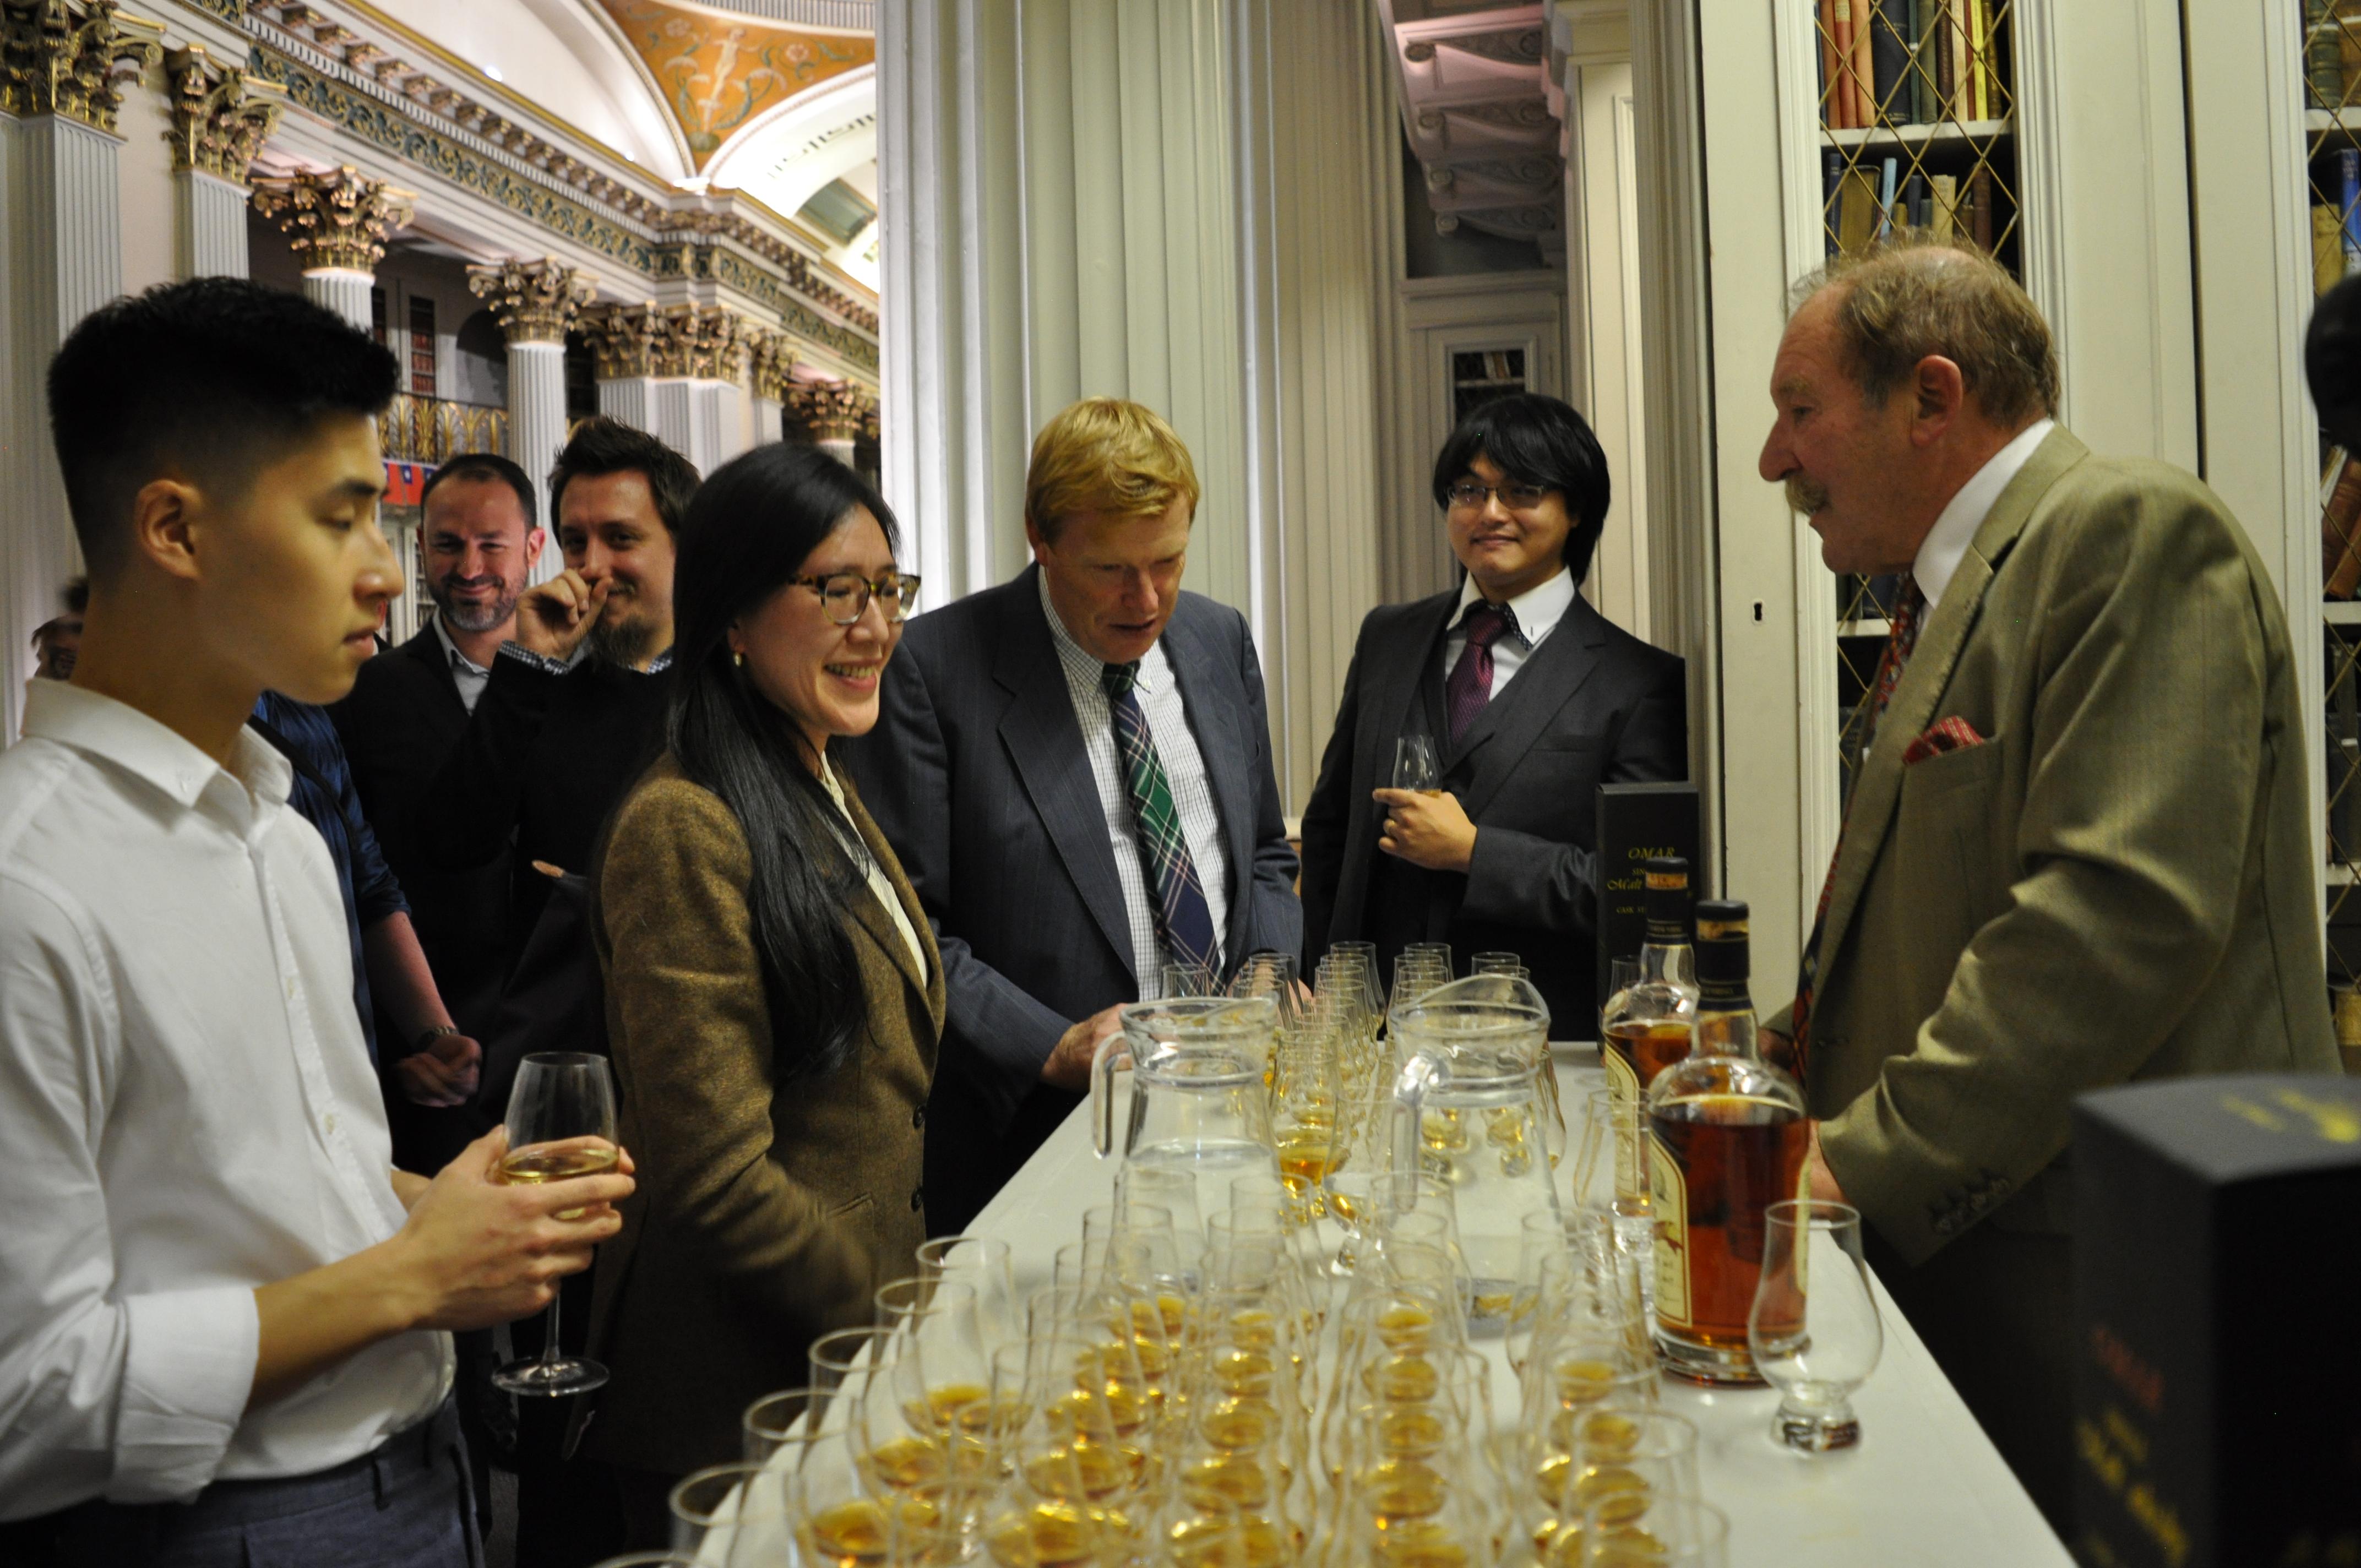 邀請蘇格蘭威士忌大師Charles MacLean帶領賓客品味台灣威士忌